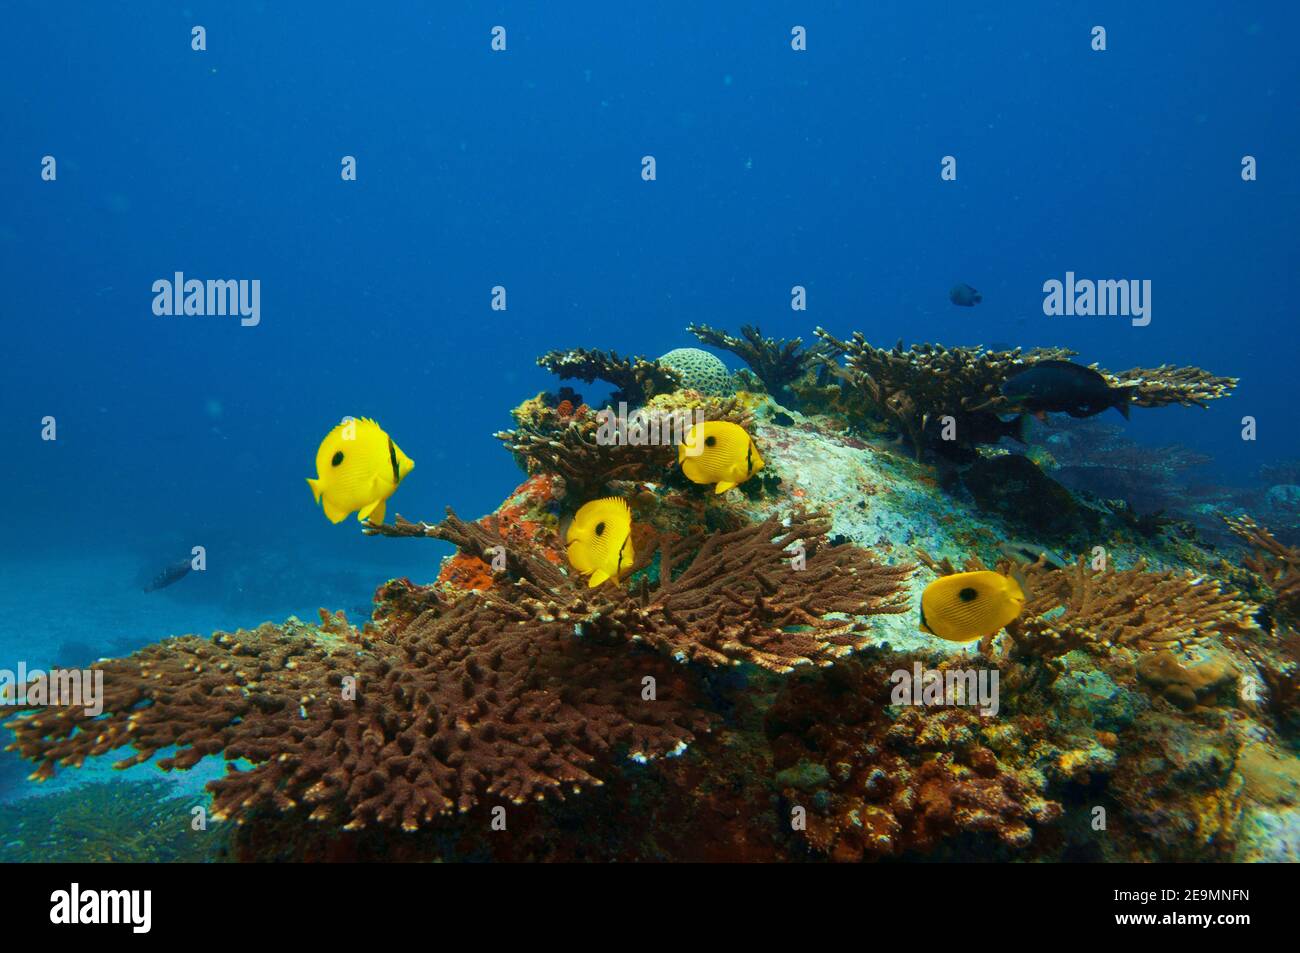 Tropical fish Zanzibar Butterflyfish  (Chaetodon zanzibarensis) swimming over the stony coral reef with blue water Stock Photo